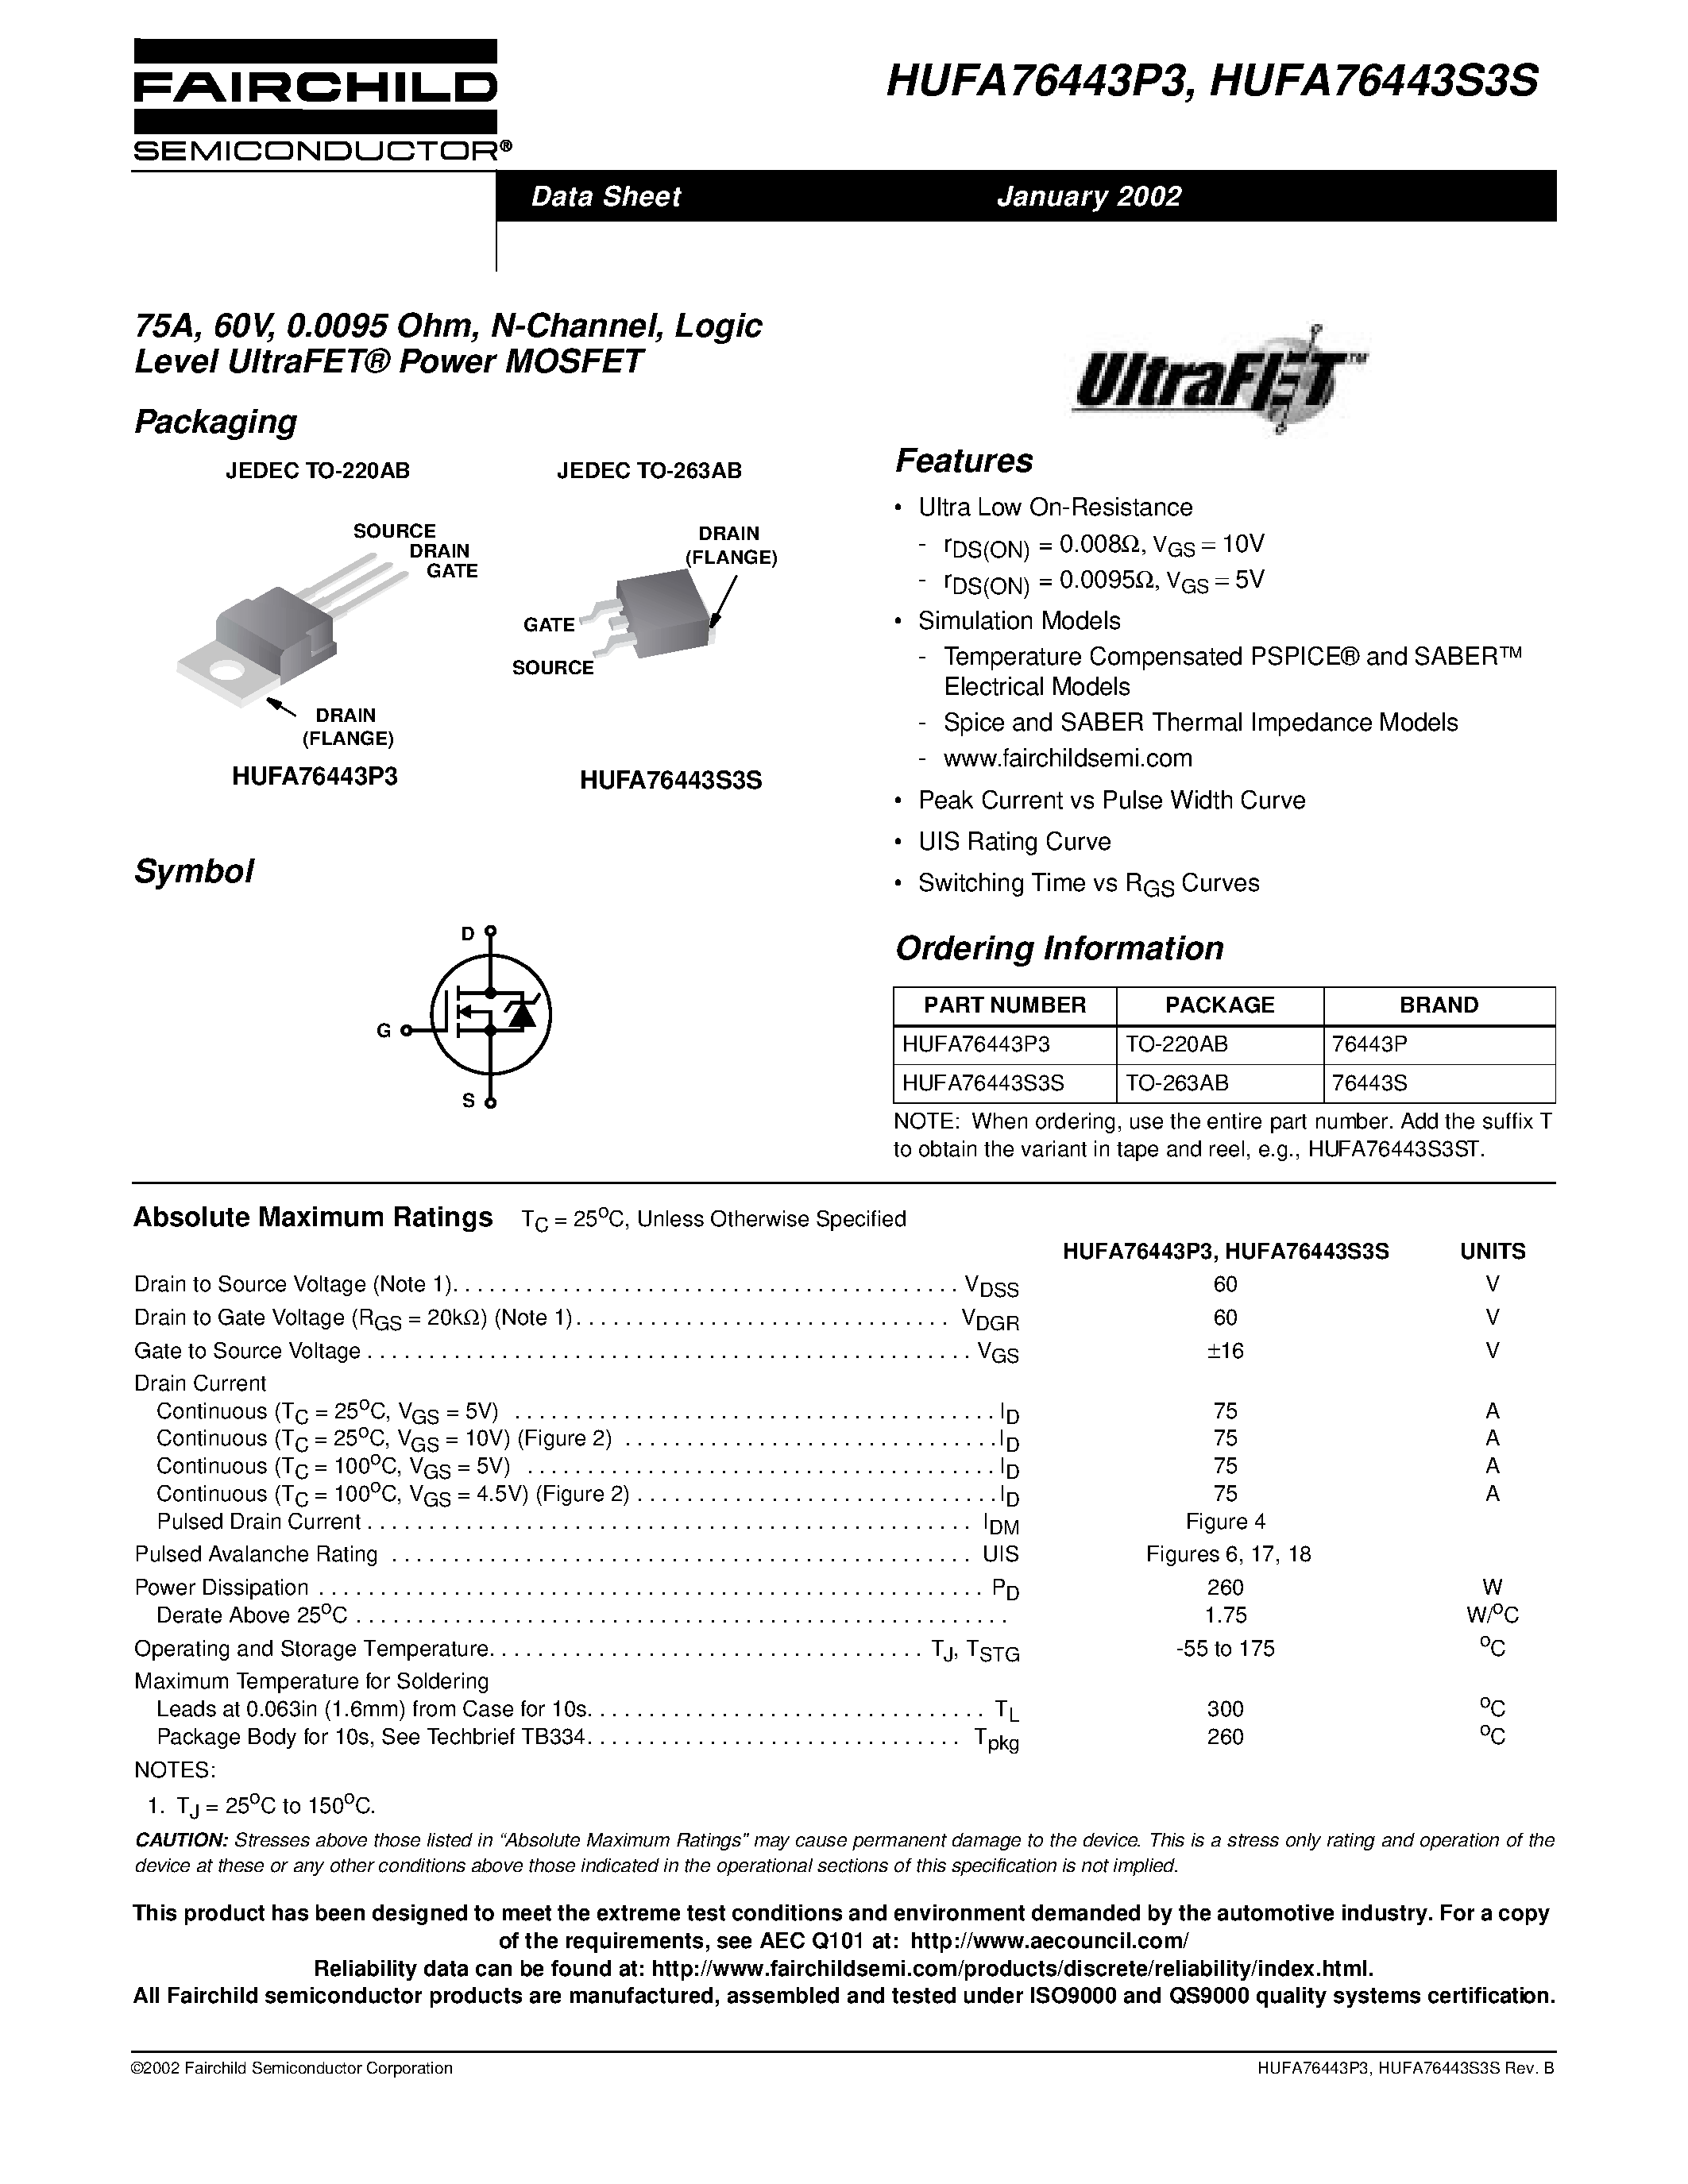 Даташит HUFA76443P3 - 75A/ 60V/ 0.0095 Ohm/ N-Channel/ Logic Level UltraFET Power MOSFET страница 1